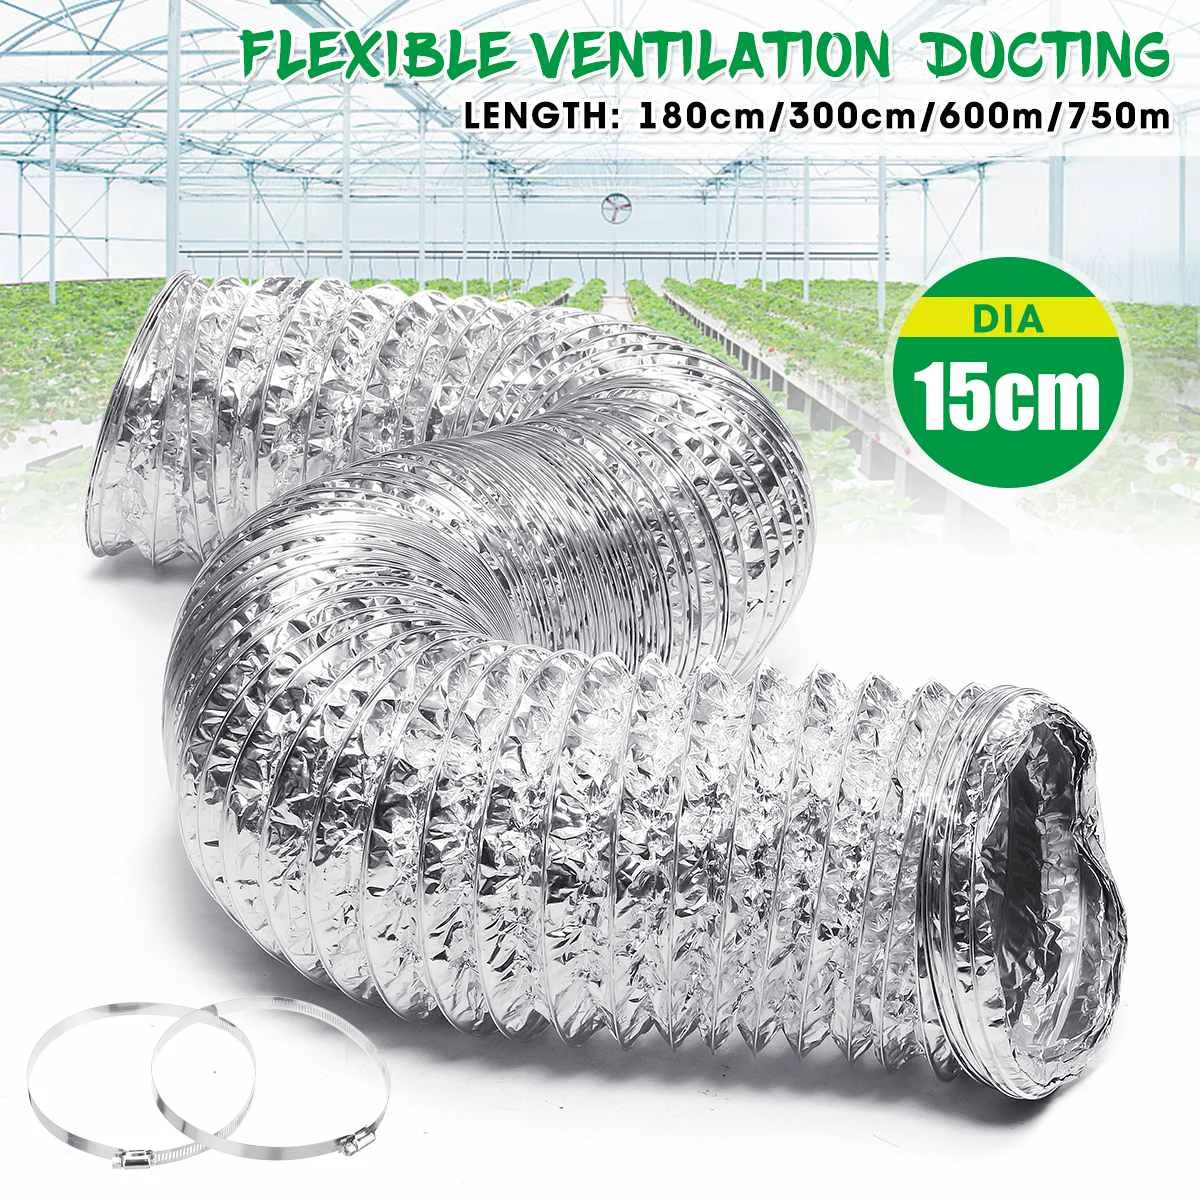 Obtenga esto Tubo adaptador de manguera de ventilación seca para cocina con abrazaderas, lámina de aluminio Flexible de 150mm, 6 ", 1,8 m/3m/6m/7,5 m bWwnMq9Y5dk